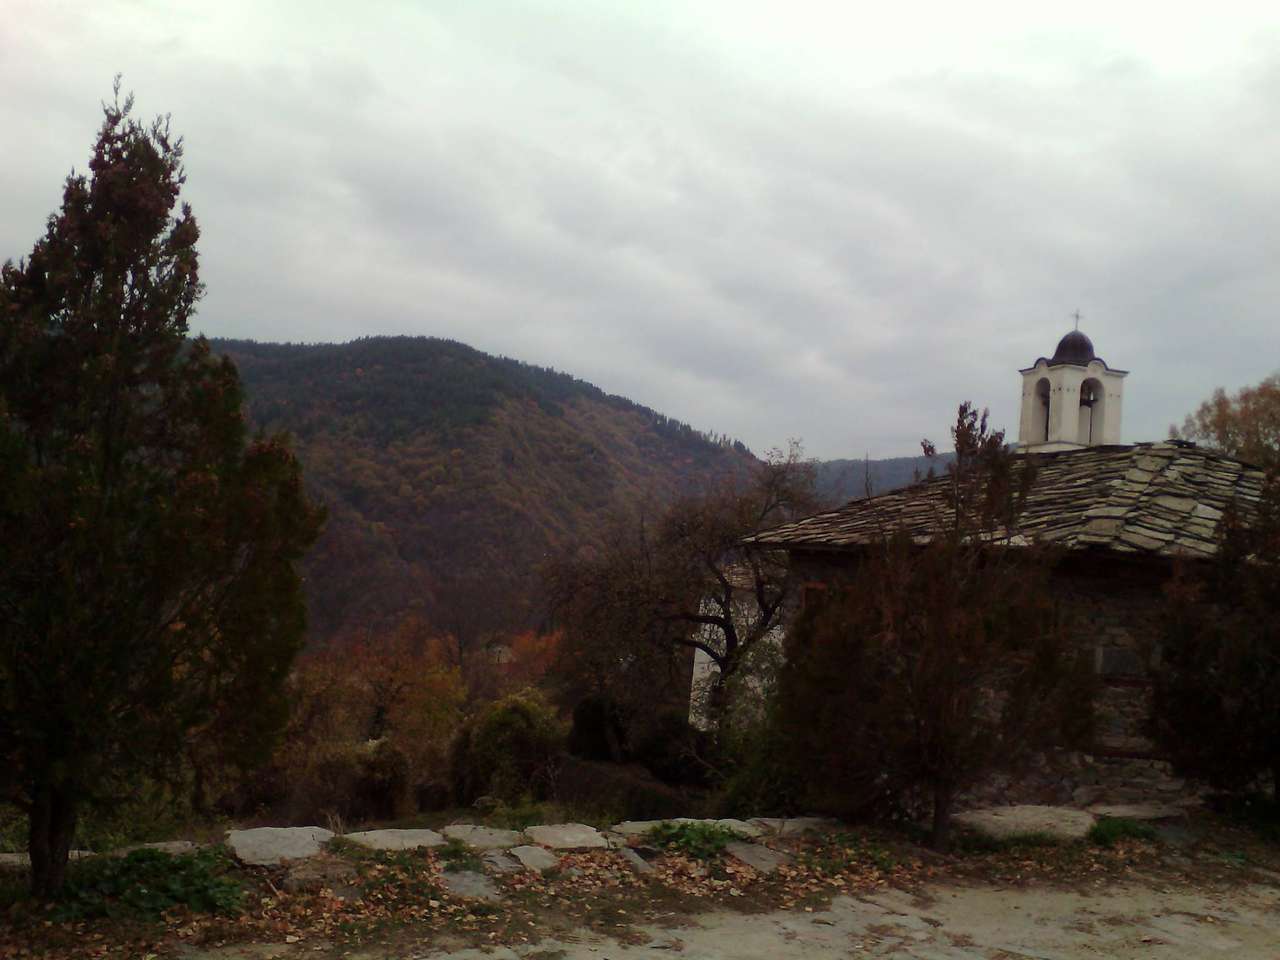 The village of Leshten Bulgaria online puzzle